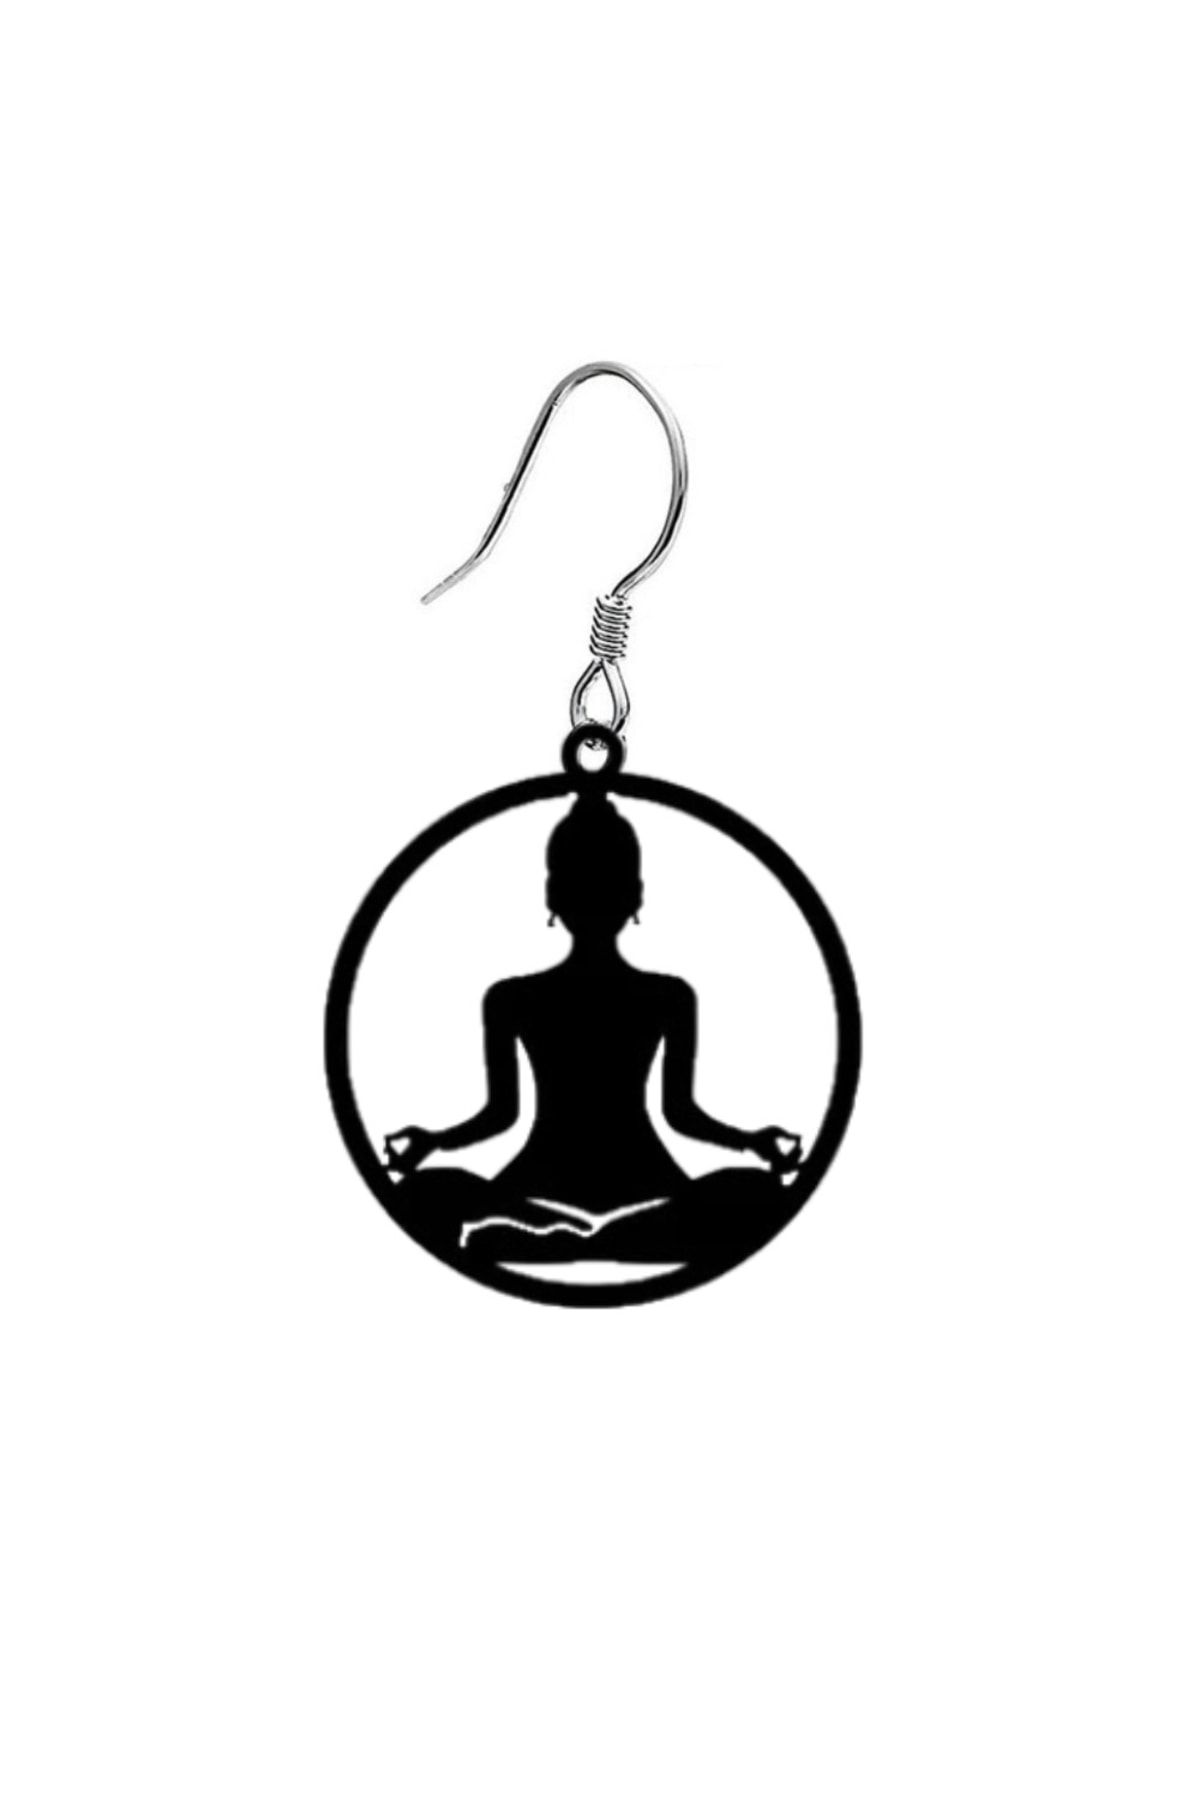 Market66 Yoga Buda Meditasyon Budizm Zen Küpe Sembol El Yapımı Kancalı Siyah Akrilik 5cm Hafif Takı